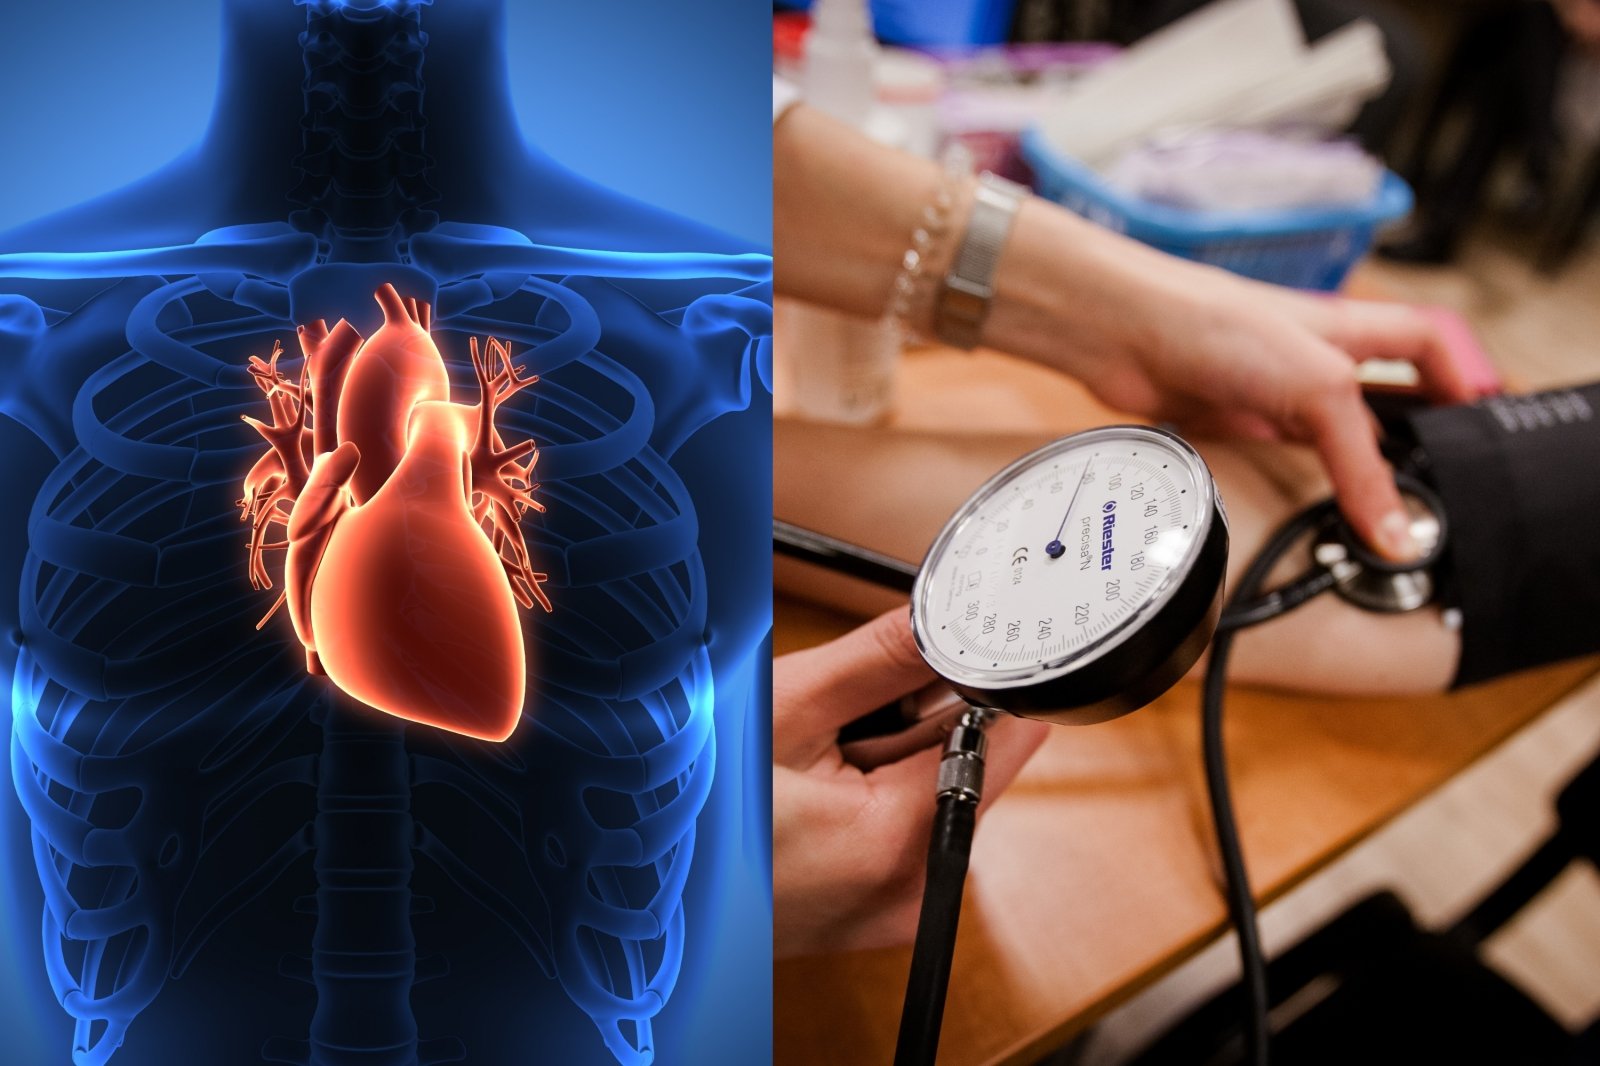 jaunų moterų širdies sveikata sergant hipertenzija, negalima daryti pratimų